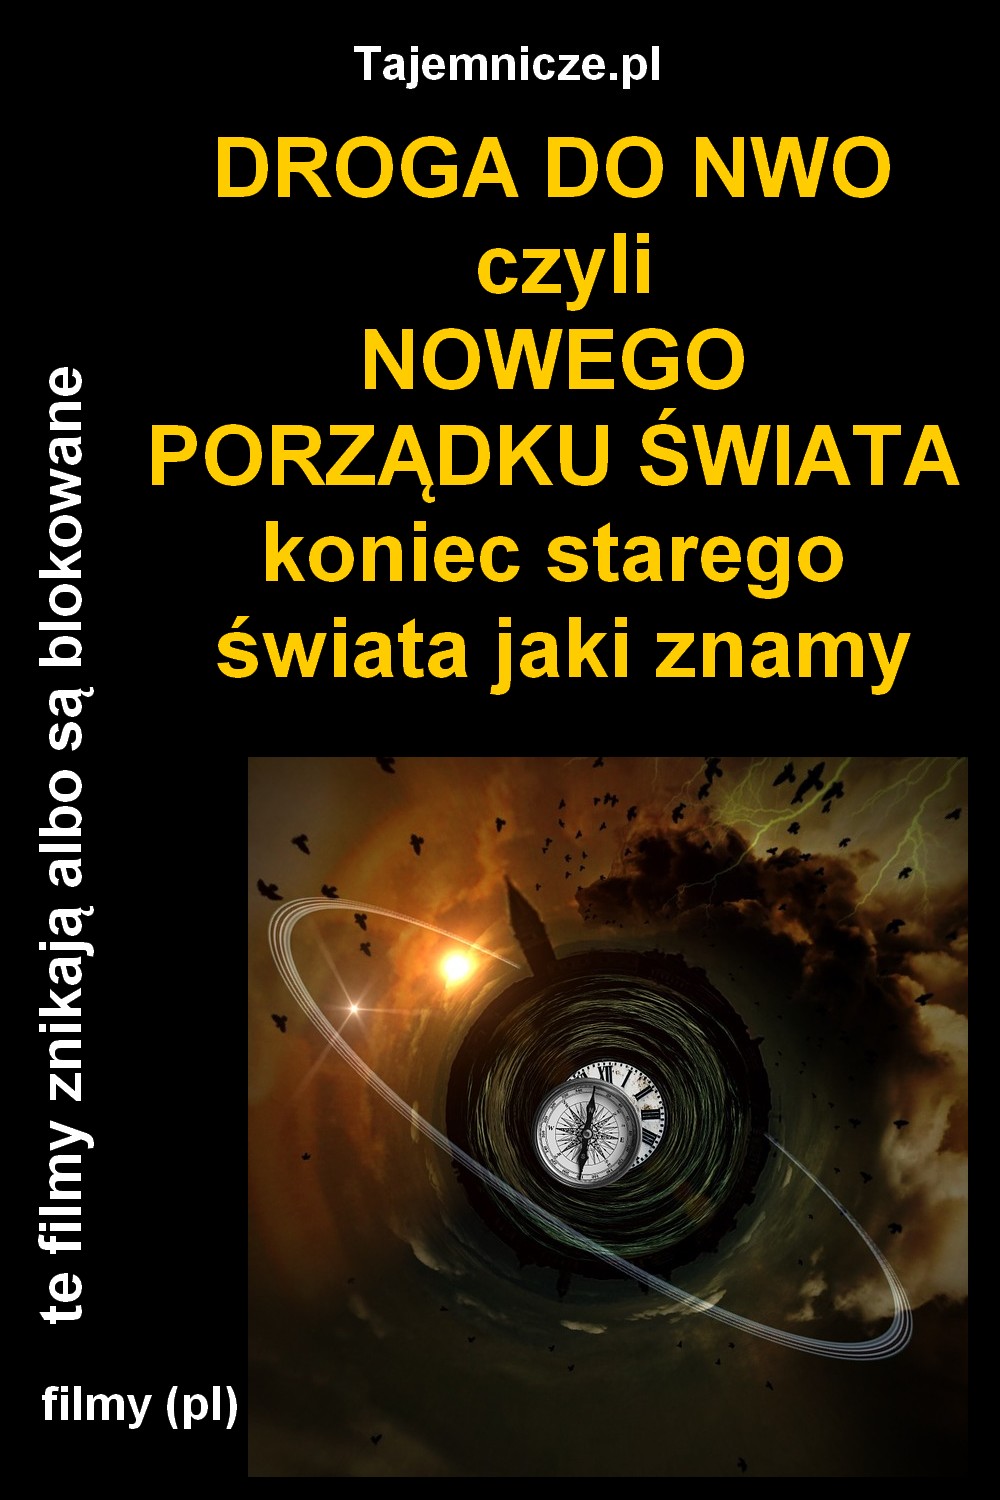 tajemnicze.pl-droga-do-nwo-filmy-pl